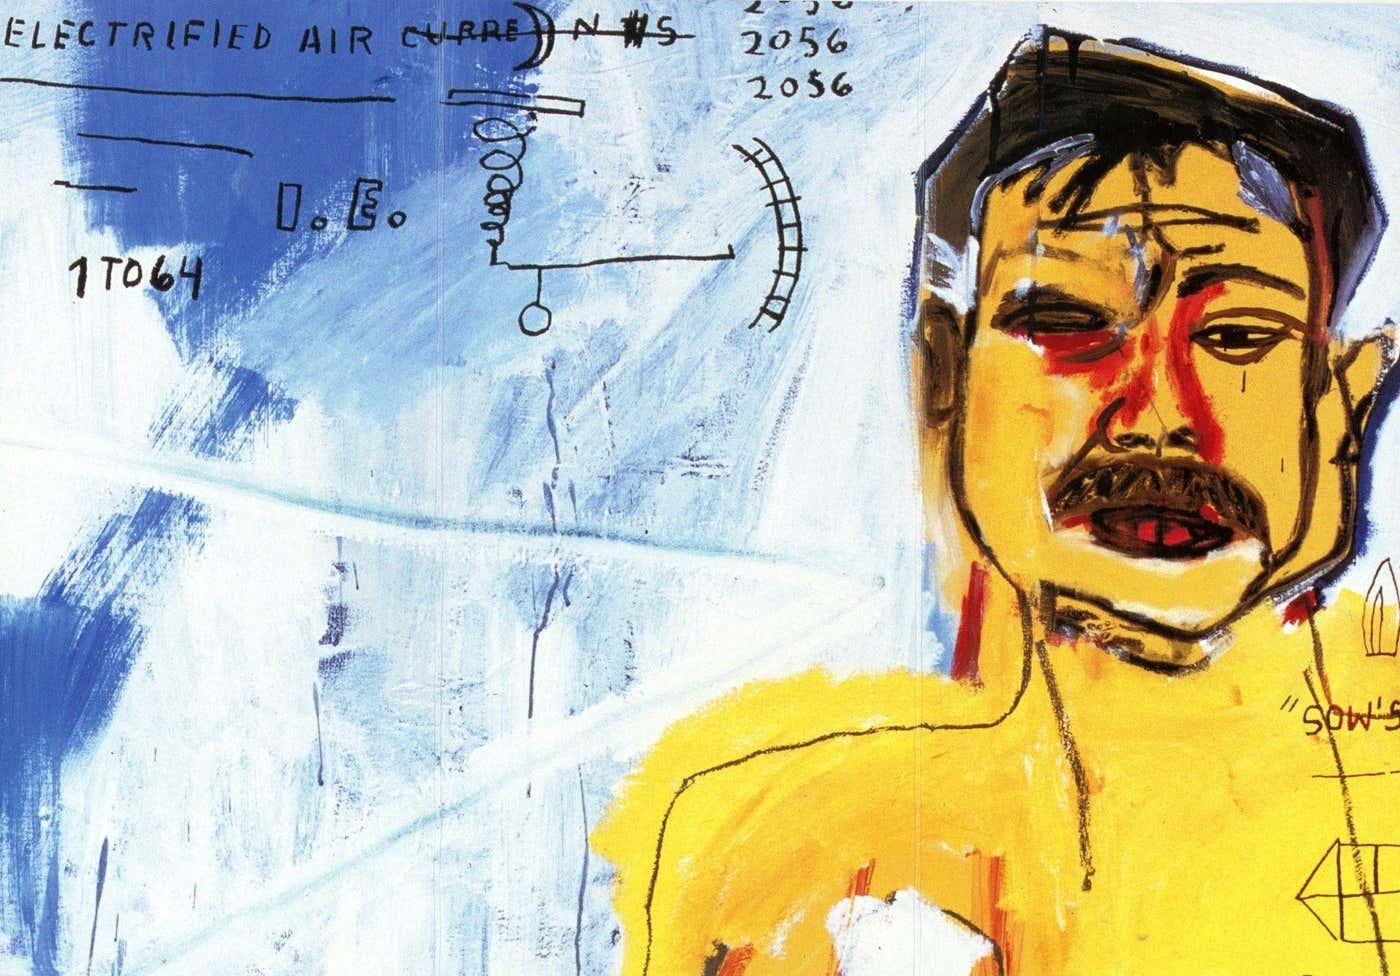 Jean-Michel Basquiat Enrico Navarra Gallery Paris 1999-2000 :
Un ensemble de 2 rares faire-part vintage de Basquiat édités à l'occasion de : 

Jean-Michel Basquiat, Gallery Enrico Navarra Paris été 2000. 

Jean-Michel Basquiat, Gallery Enrico